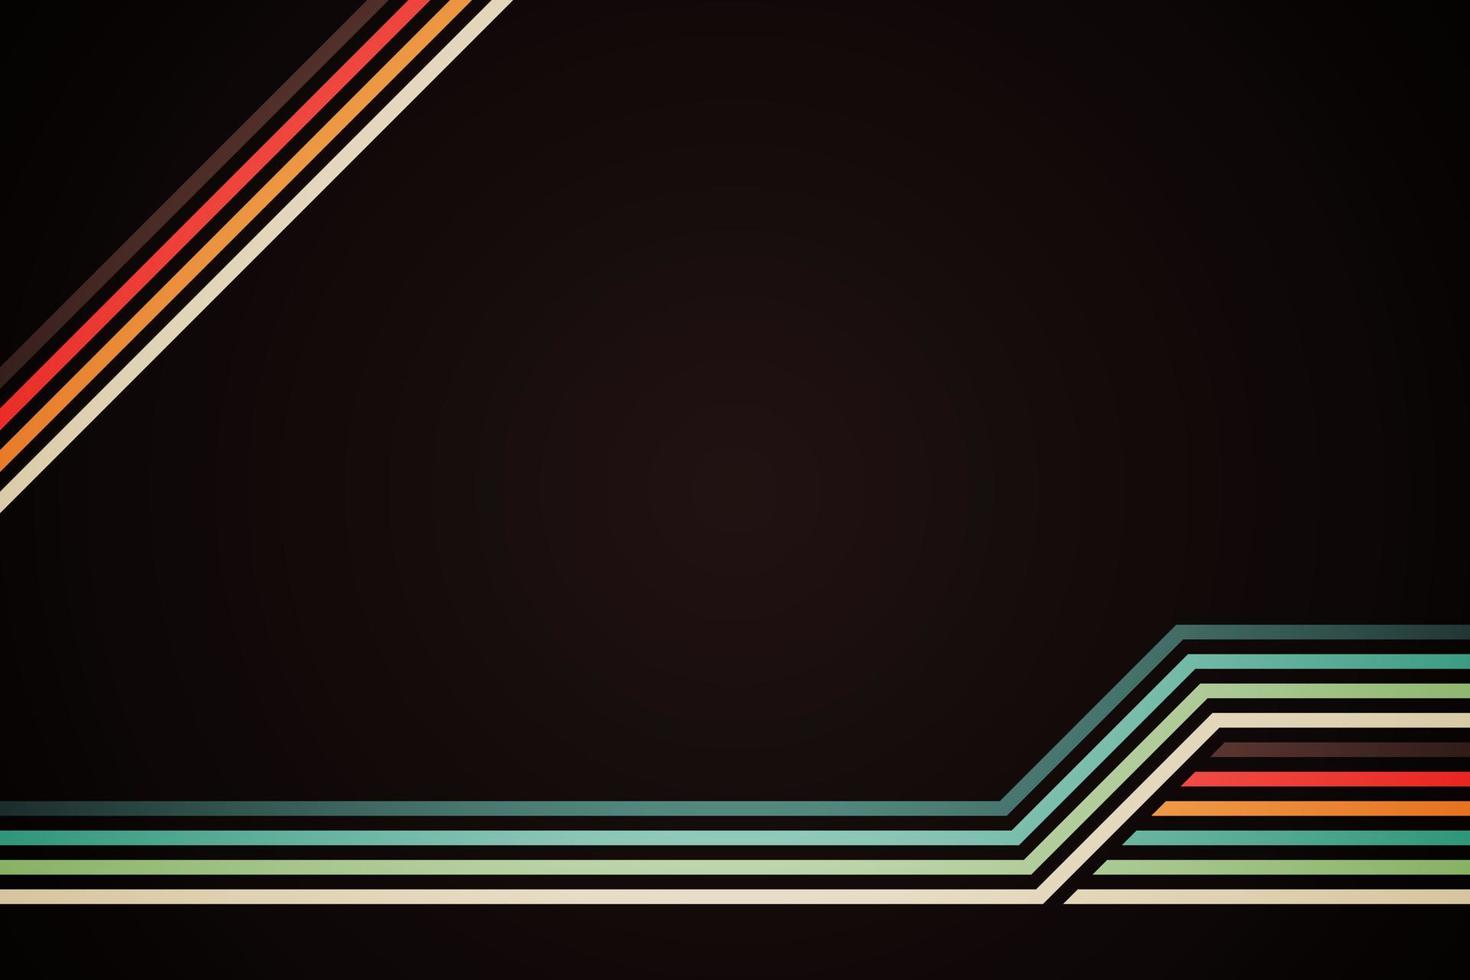 líneas de rayas coloridas simples abstractas en estilo retro vector